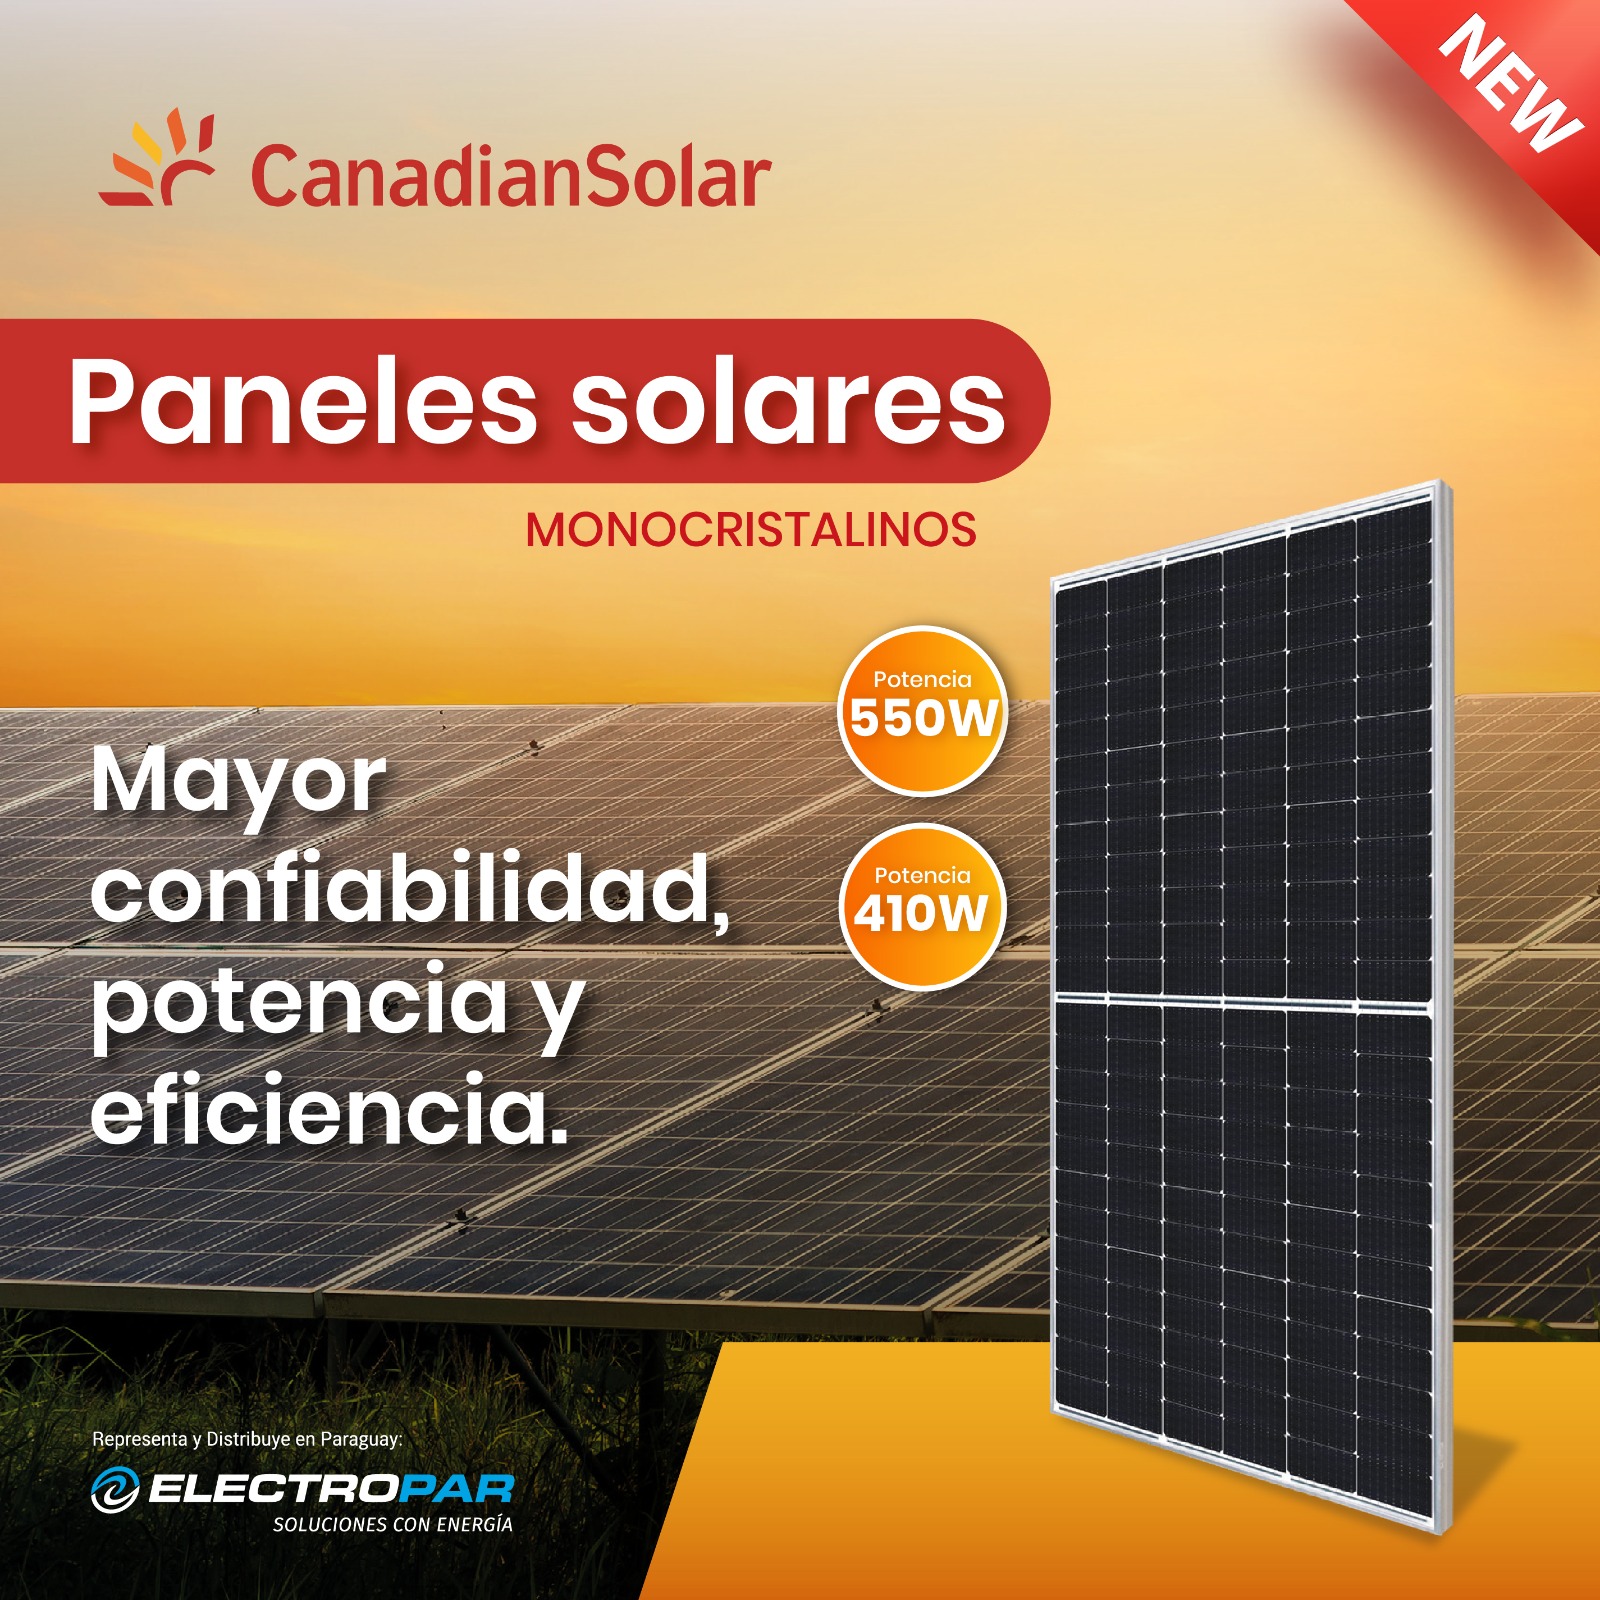 Energía limpia: Canadian Solar llega a Paraguay